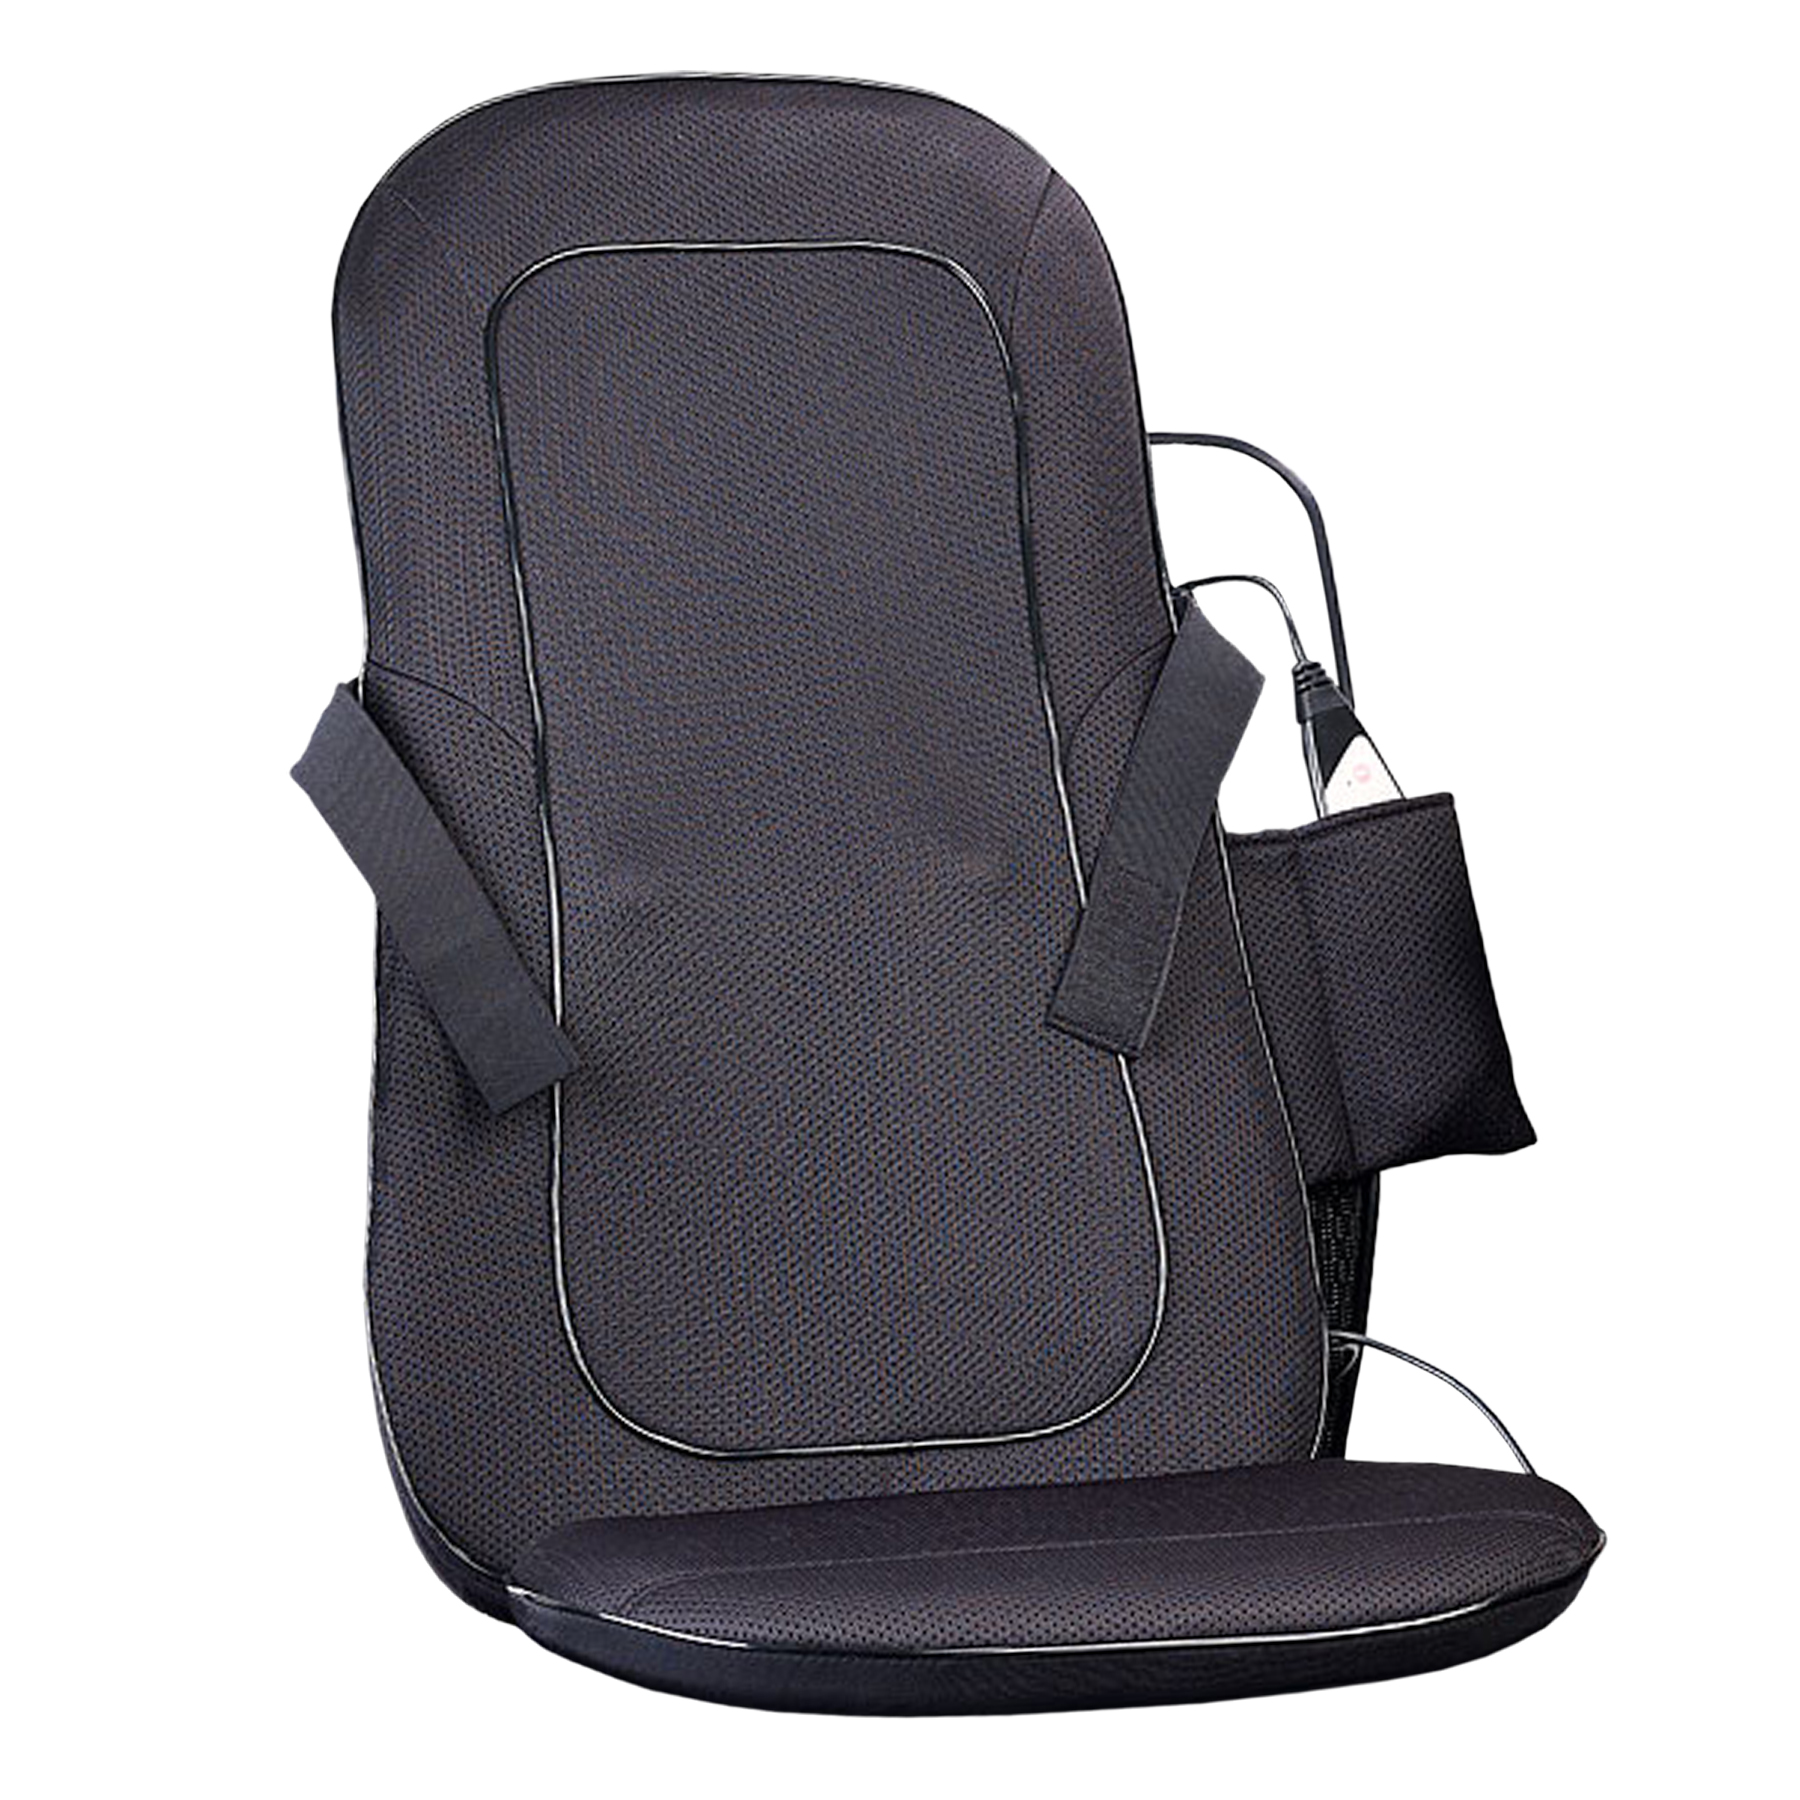 Massageauflage für Sessel, Massagematte für Autositz, beheizbare Sitzauflage Auto für Rückenmassage, Rücken Massagegerät mit Wärmefunktion